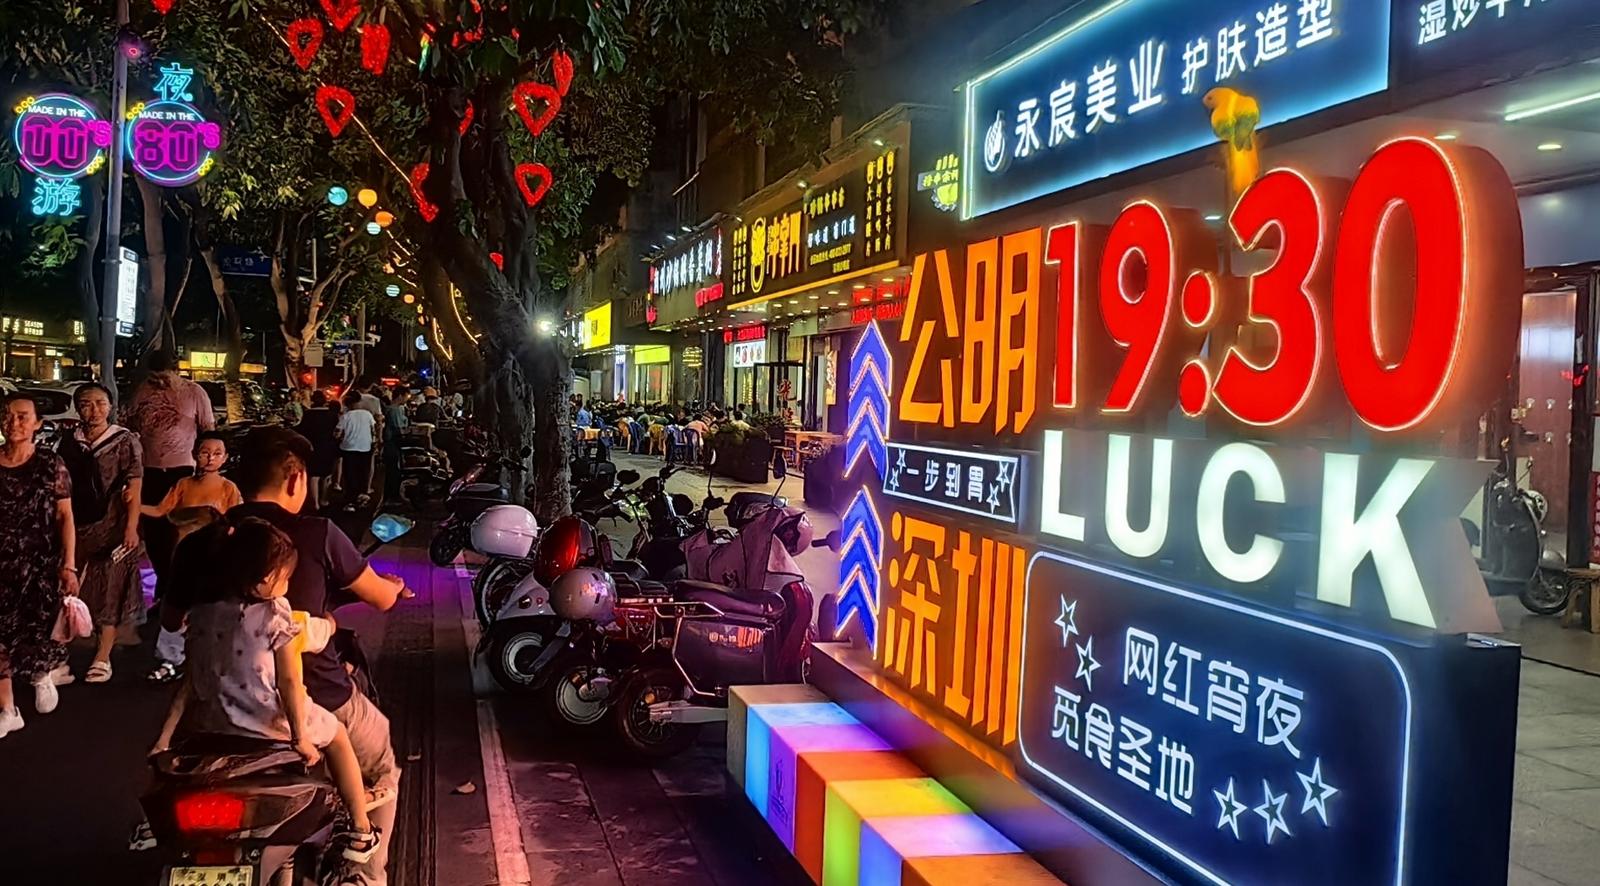 公明街道被评为深圳市年度夜间经济活力街道